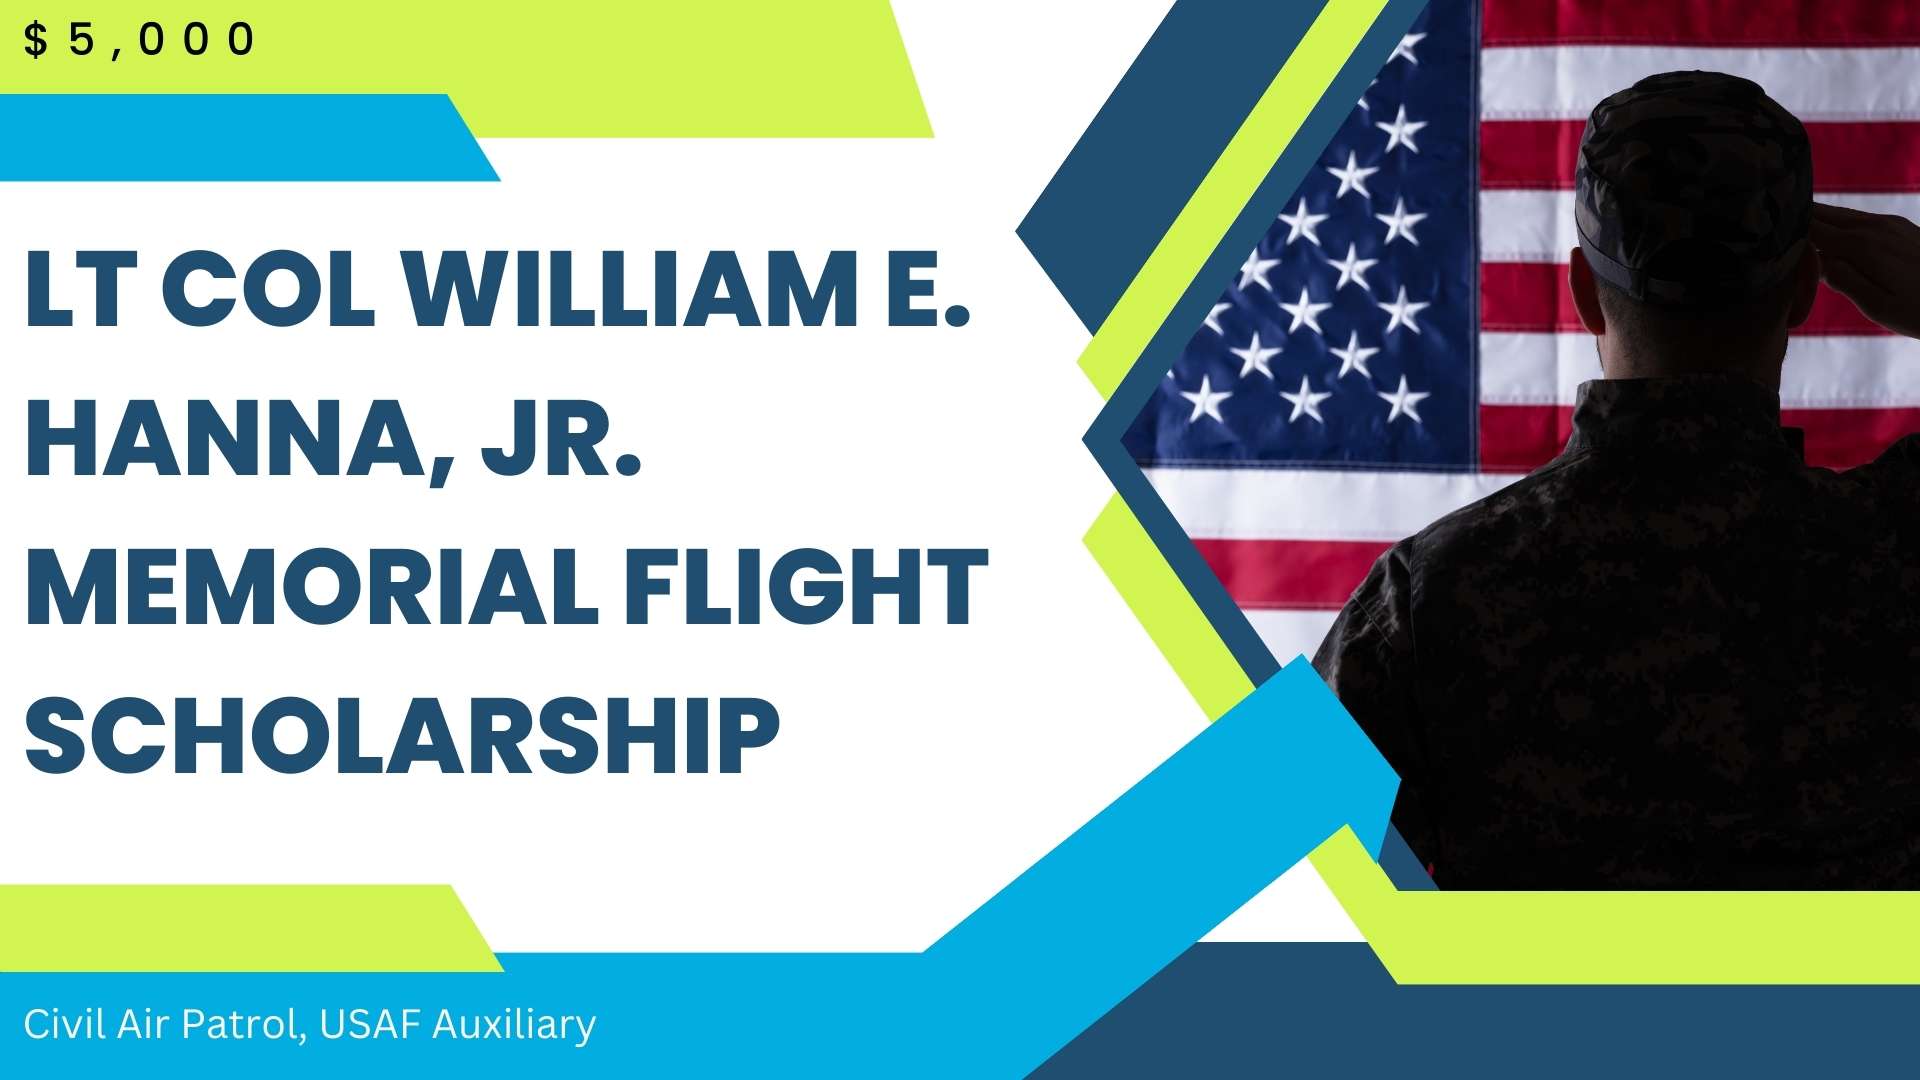 Lt Col William E. Hanna, Jr. Memorial Flight Scholarship